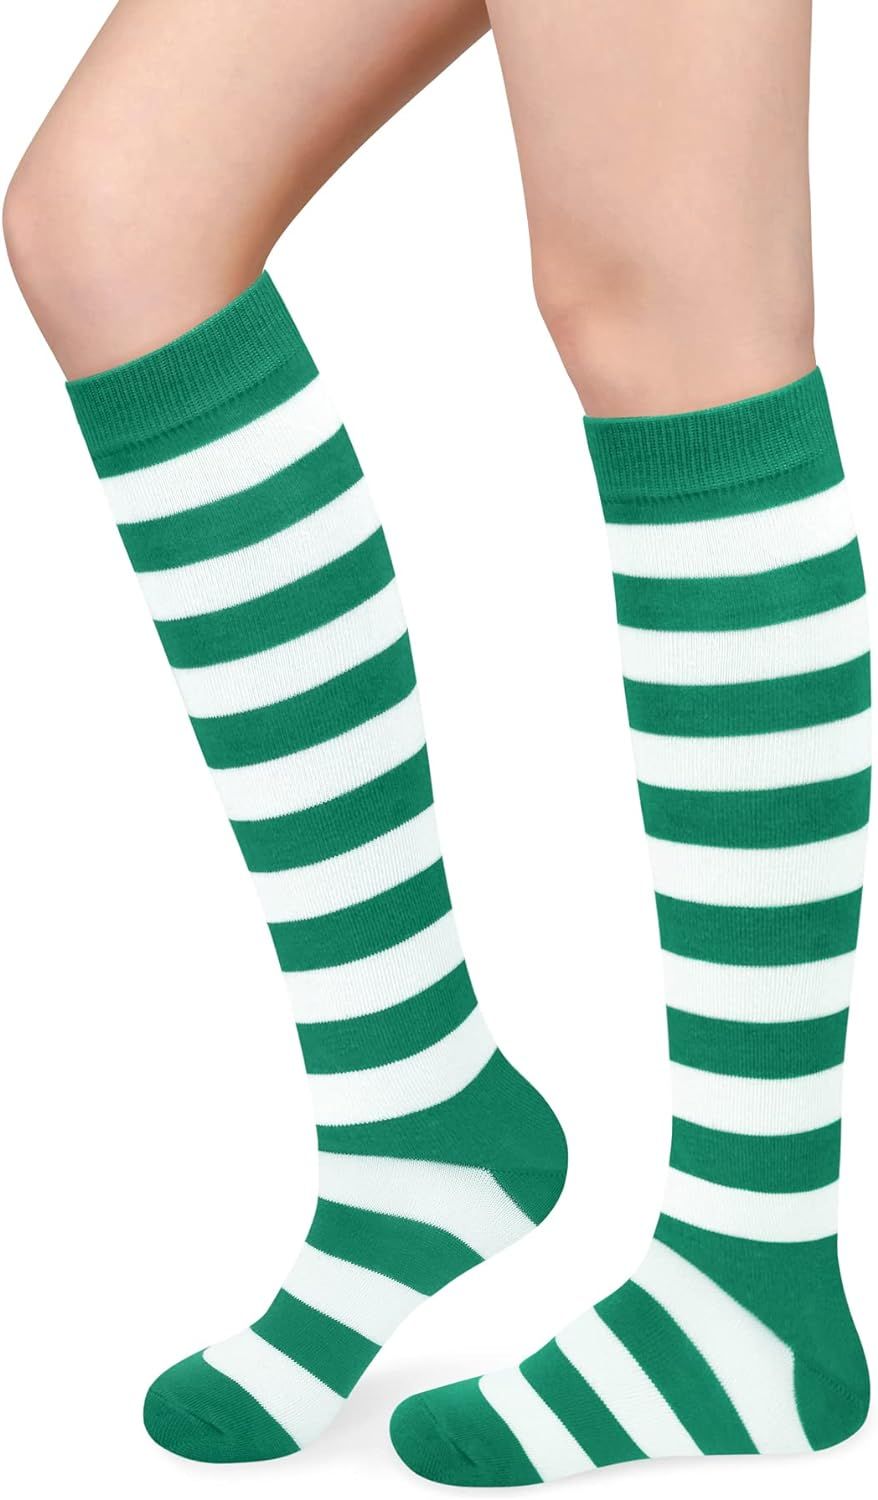 Olreco Knee High Socks for Women Knee Socks Long Socks Striped Tube Socks High Socks Womens Athle... | Amazon (US)